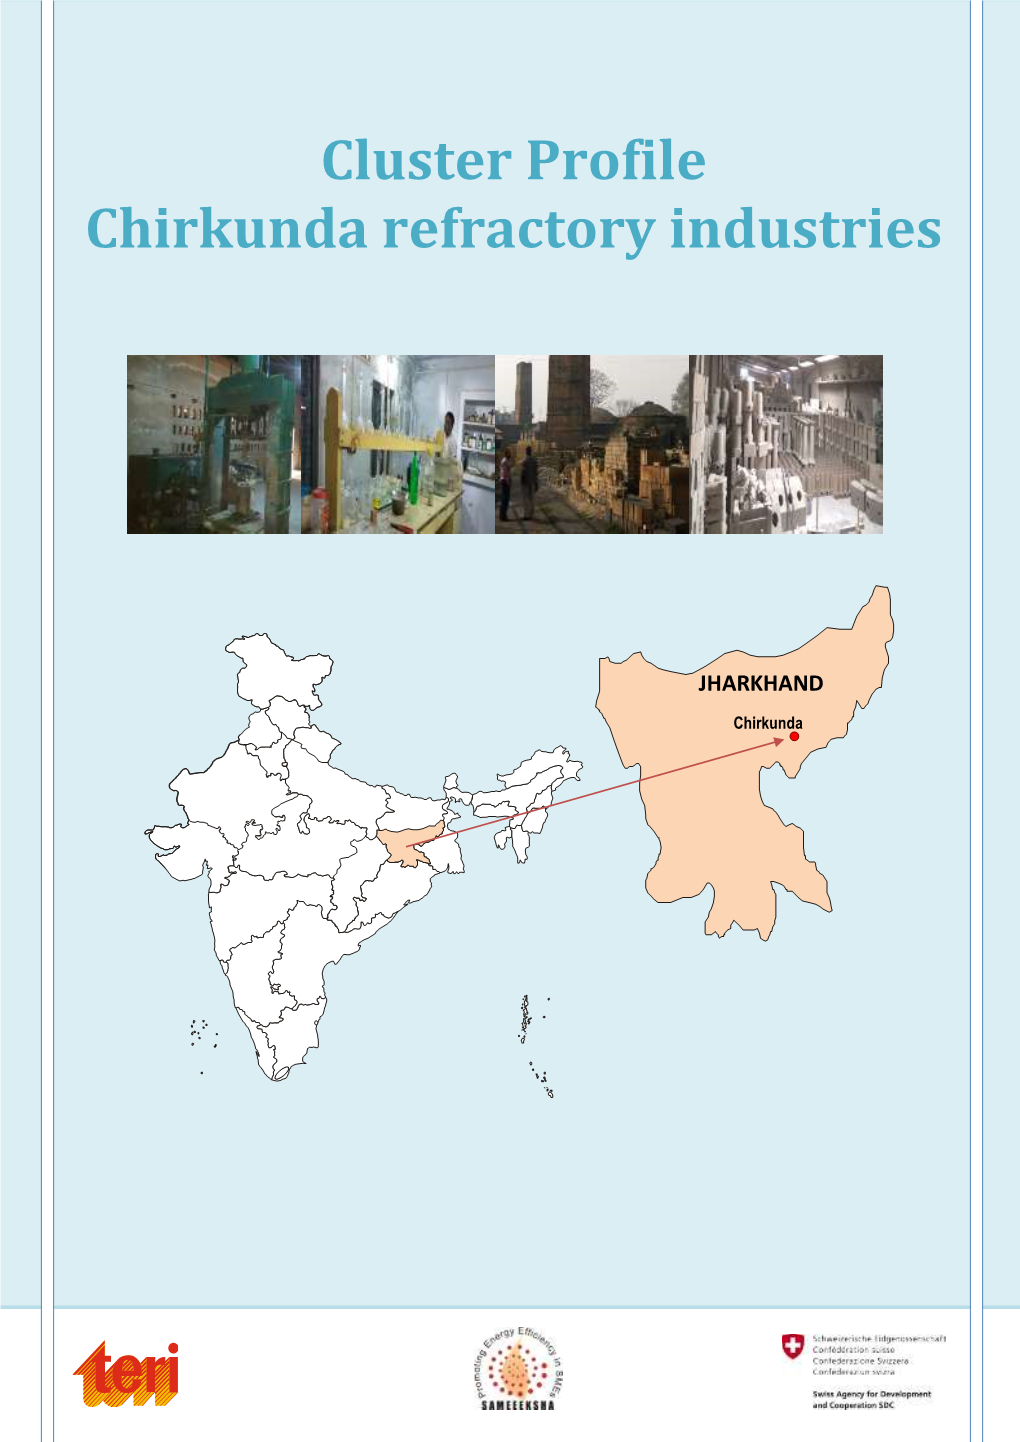 Chirkunda Refractory Industries